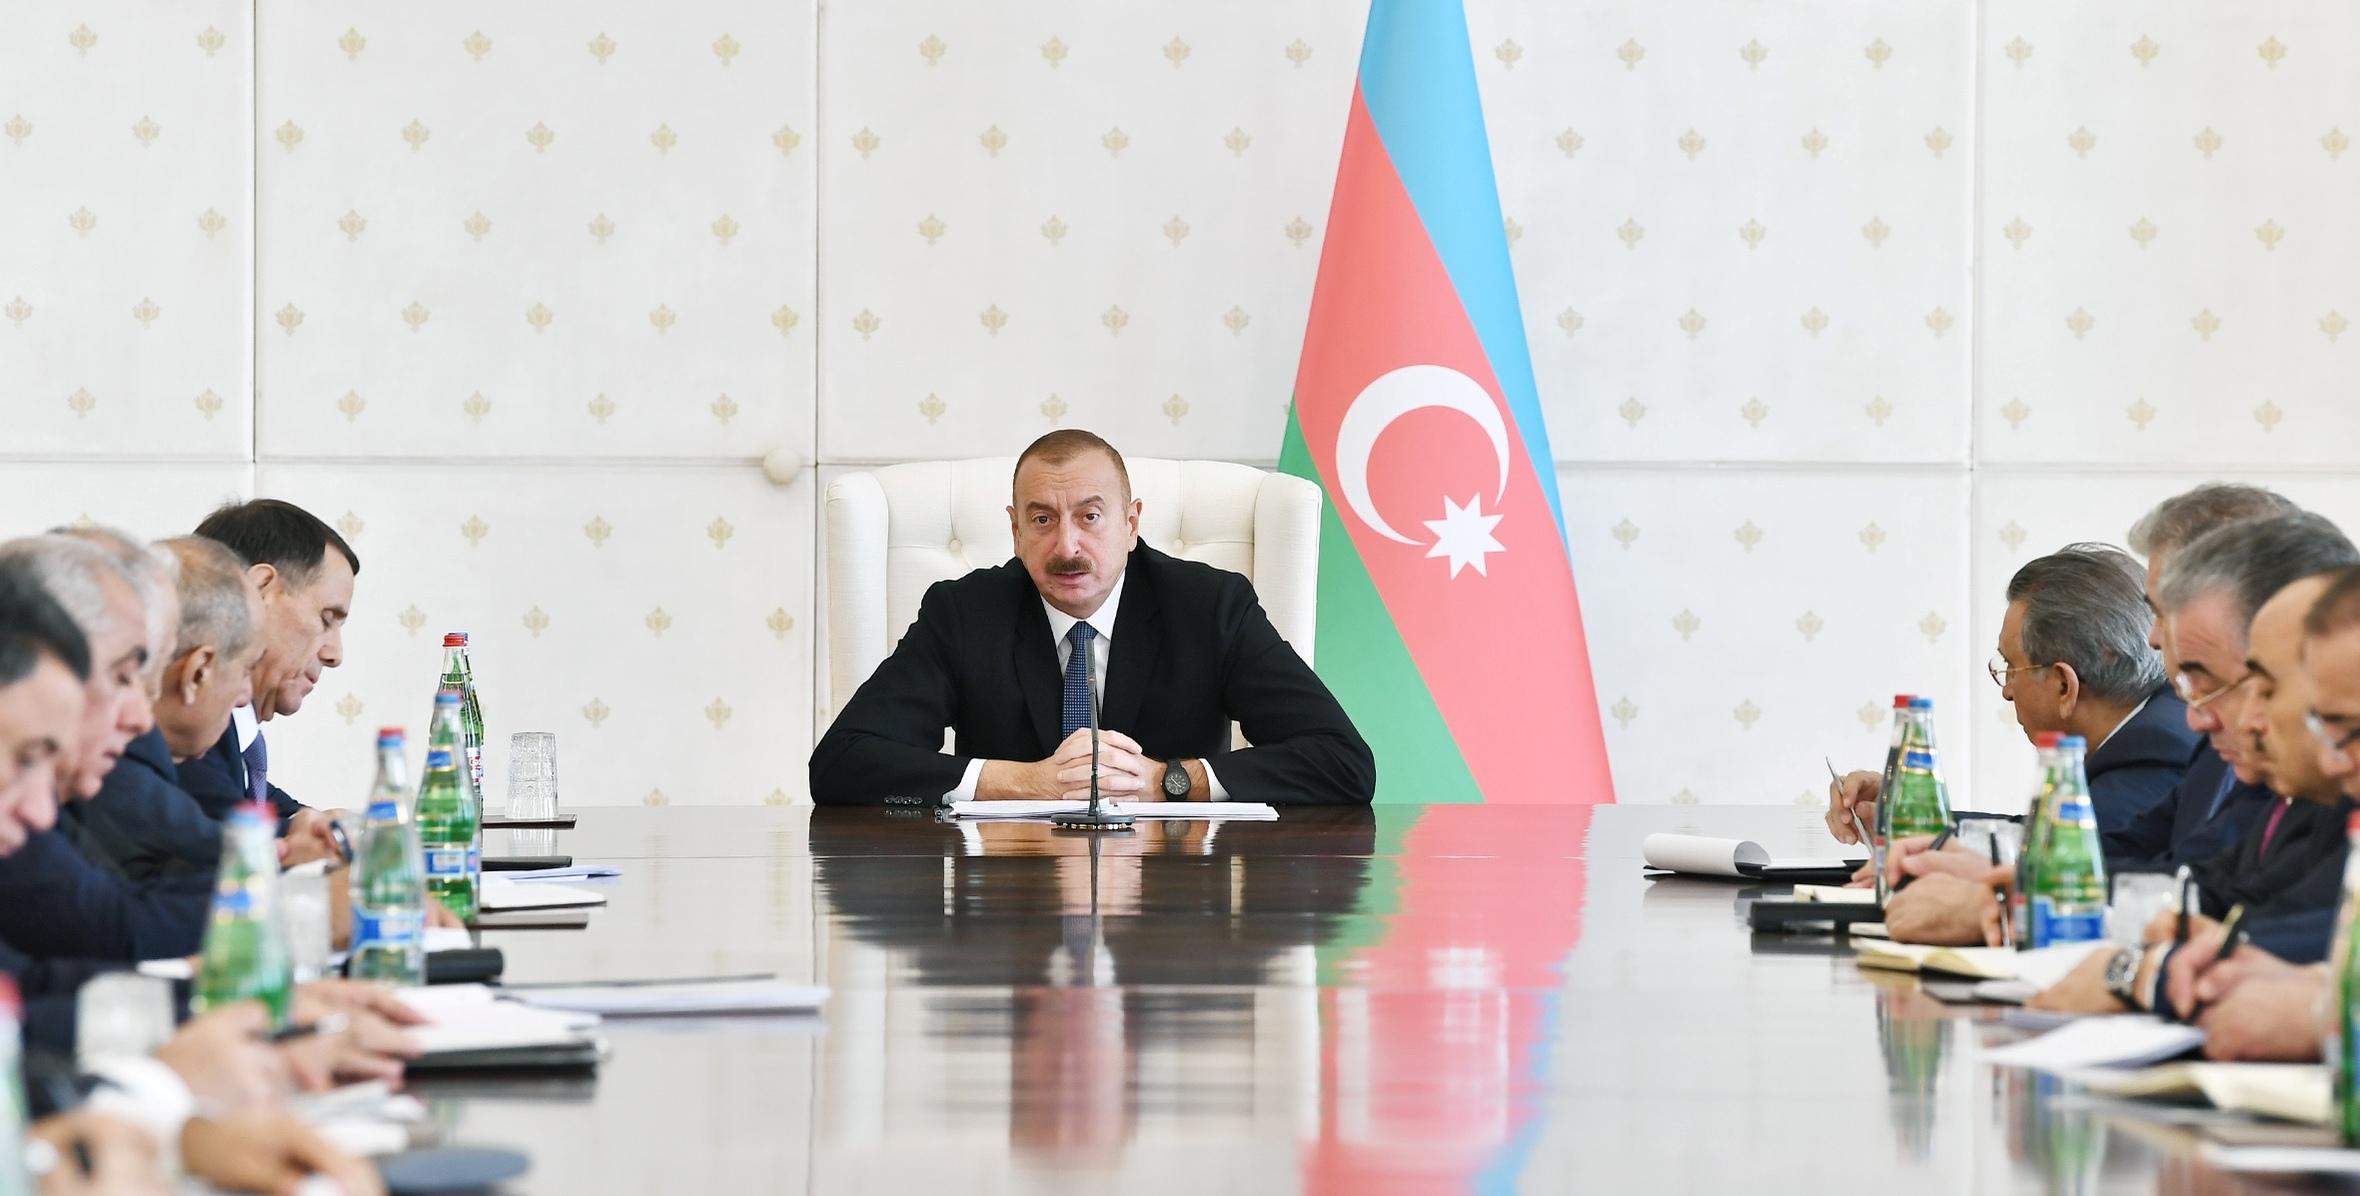 Заключительная речь Ильхама Алиева на заседание Кабинета Министров, посвященное итогам социально-экономического развития за девять месяцев 2018 года и предстоящим задачам